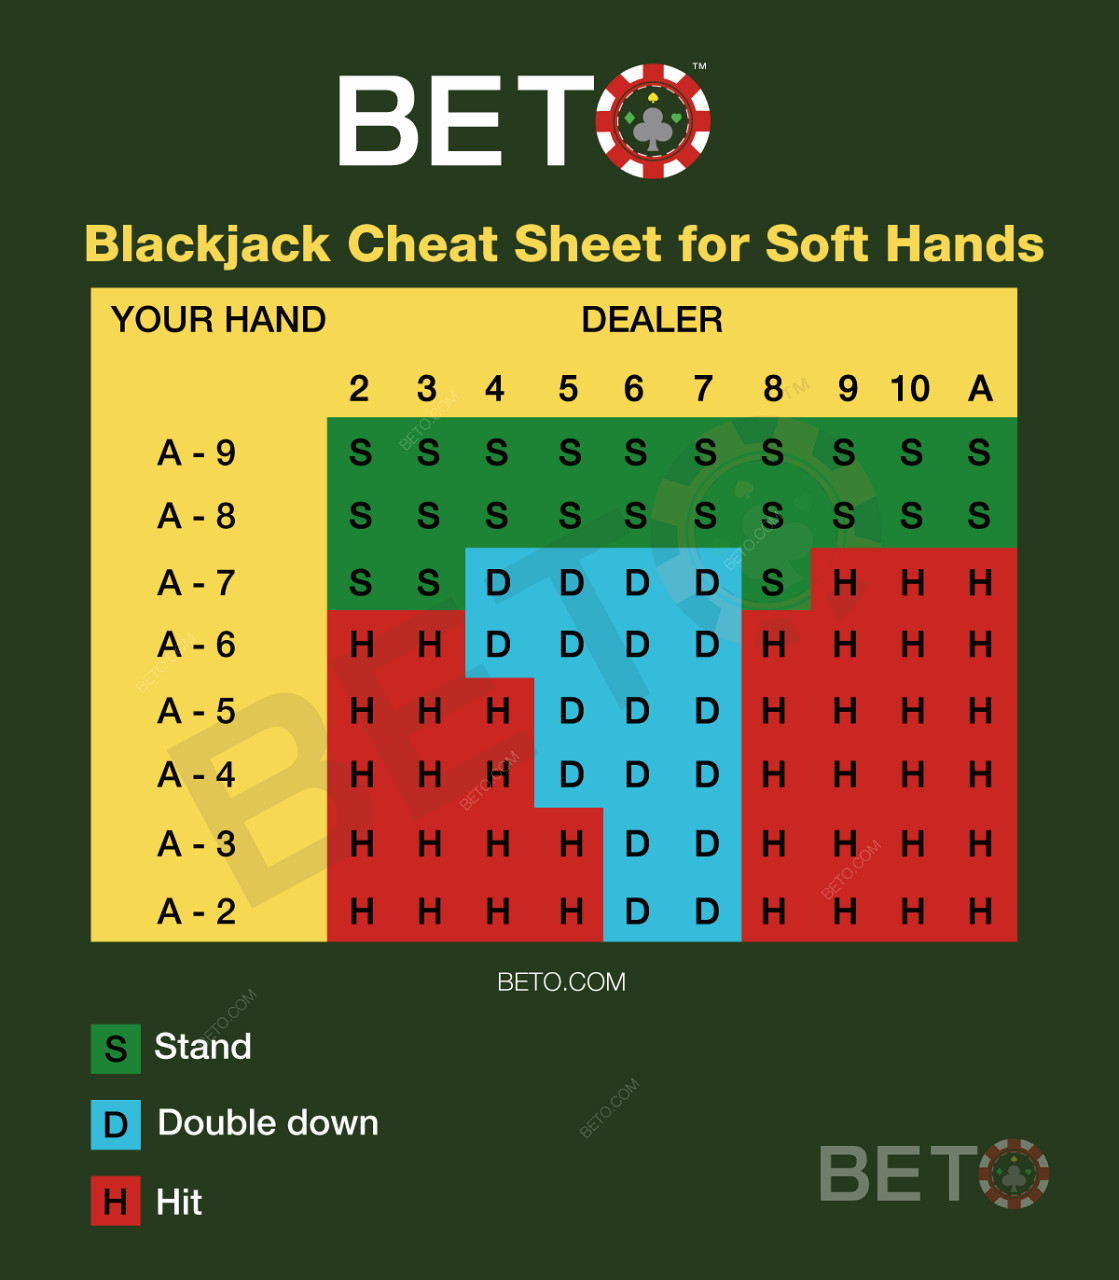 Tabela de blackjack para mãos suaves em blackjack